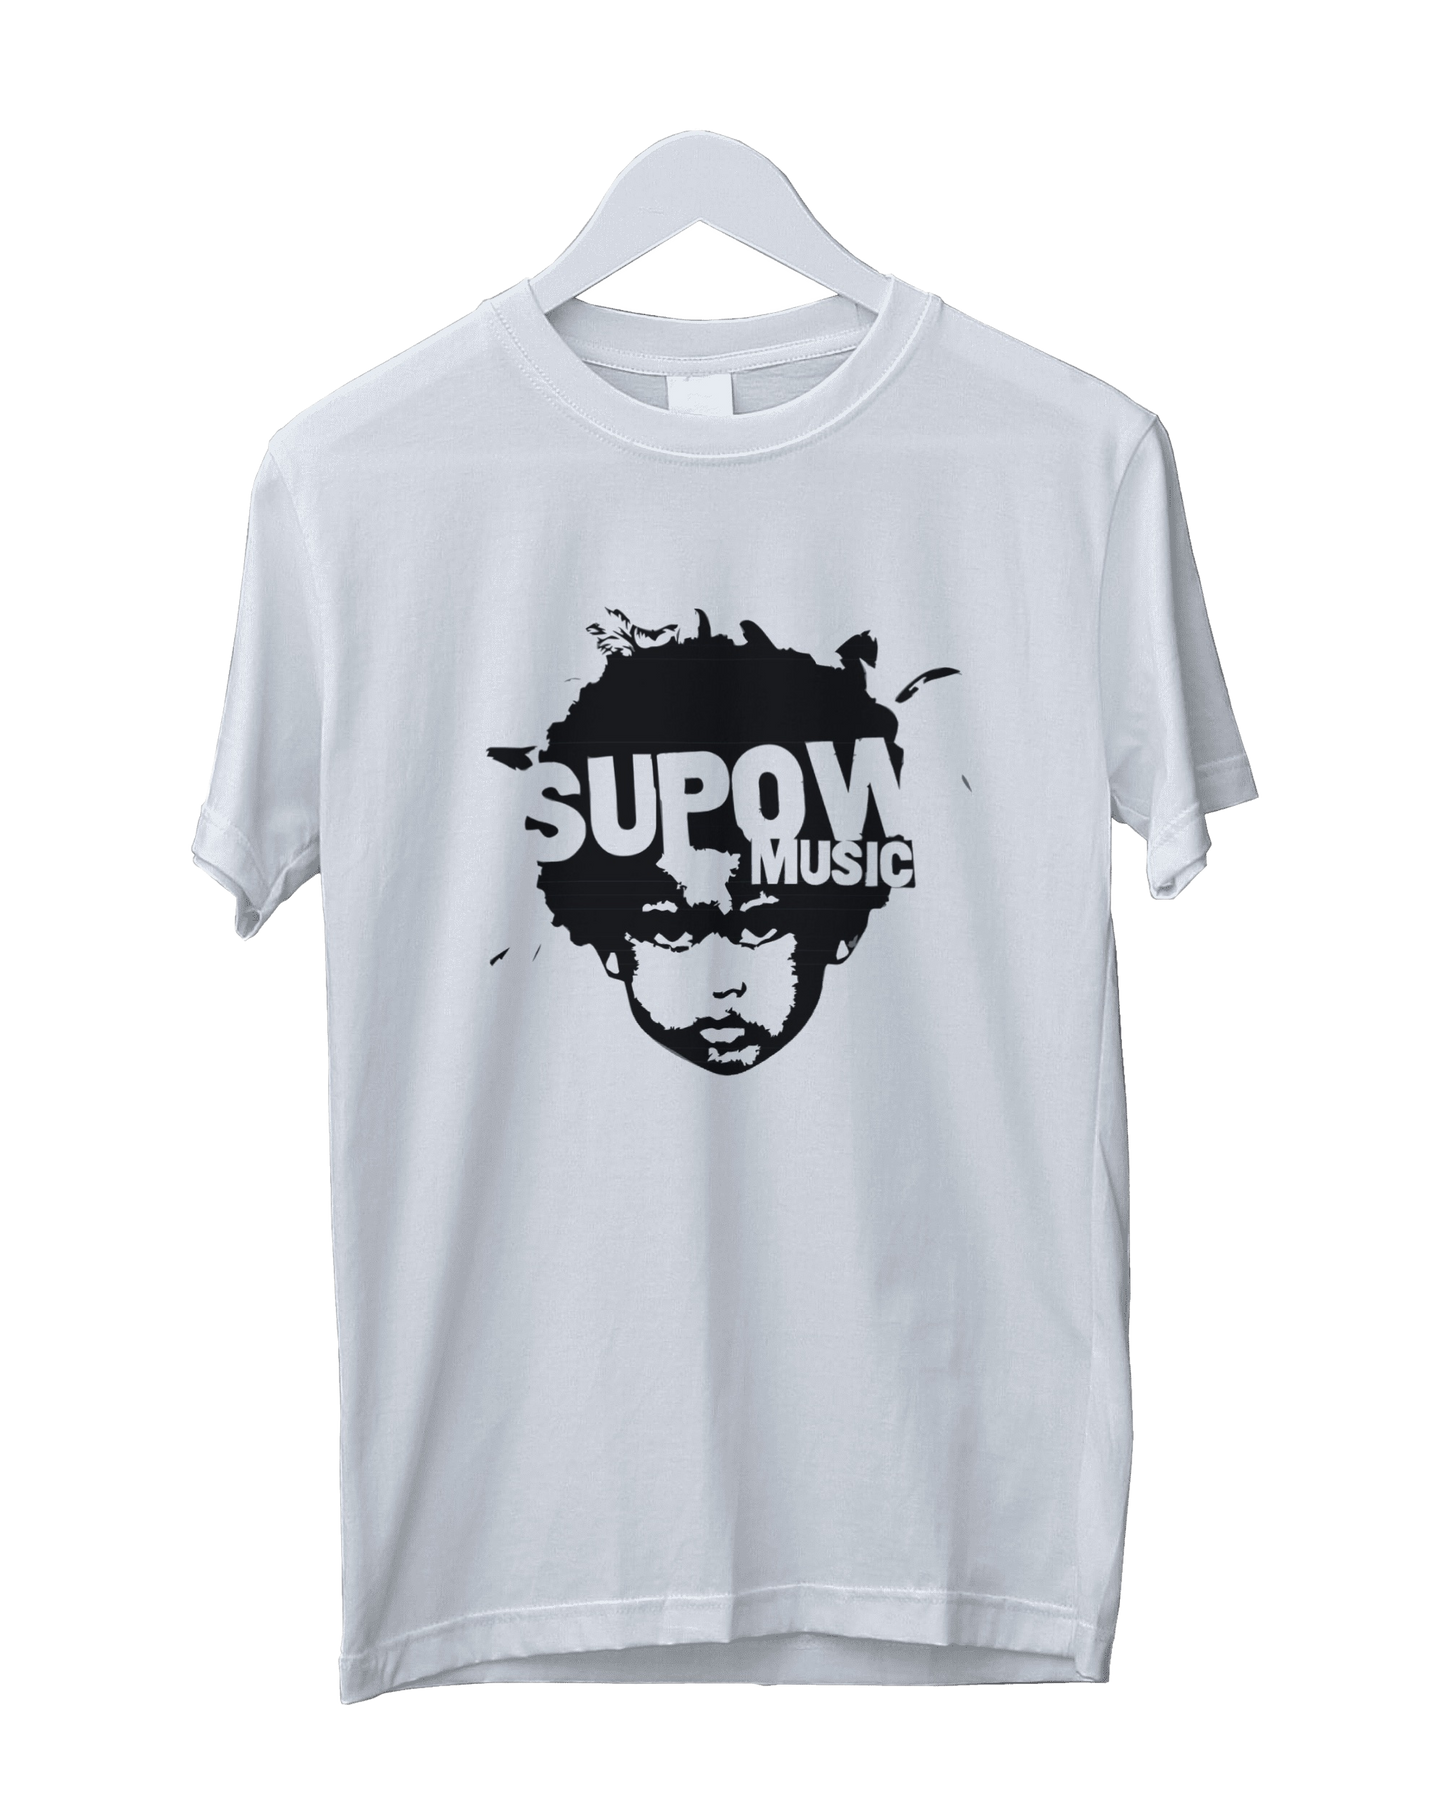 Supow Music T-shirt